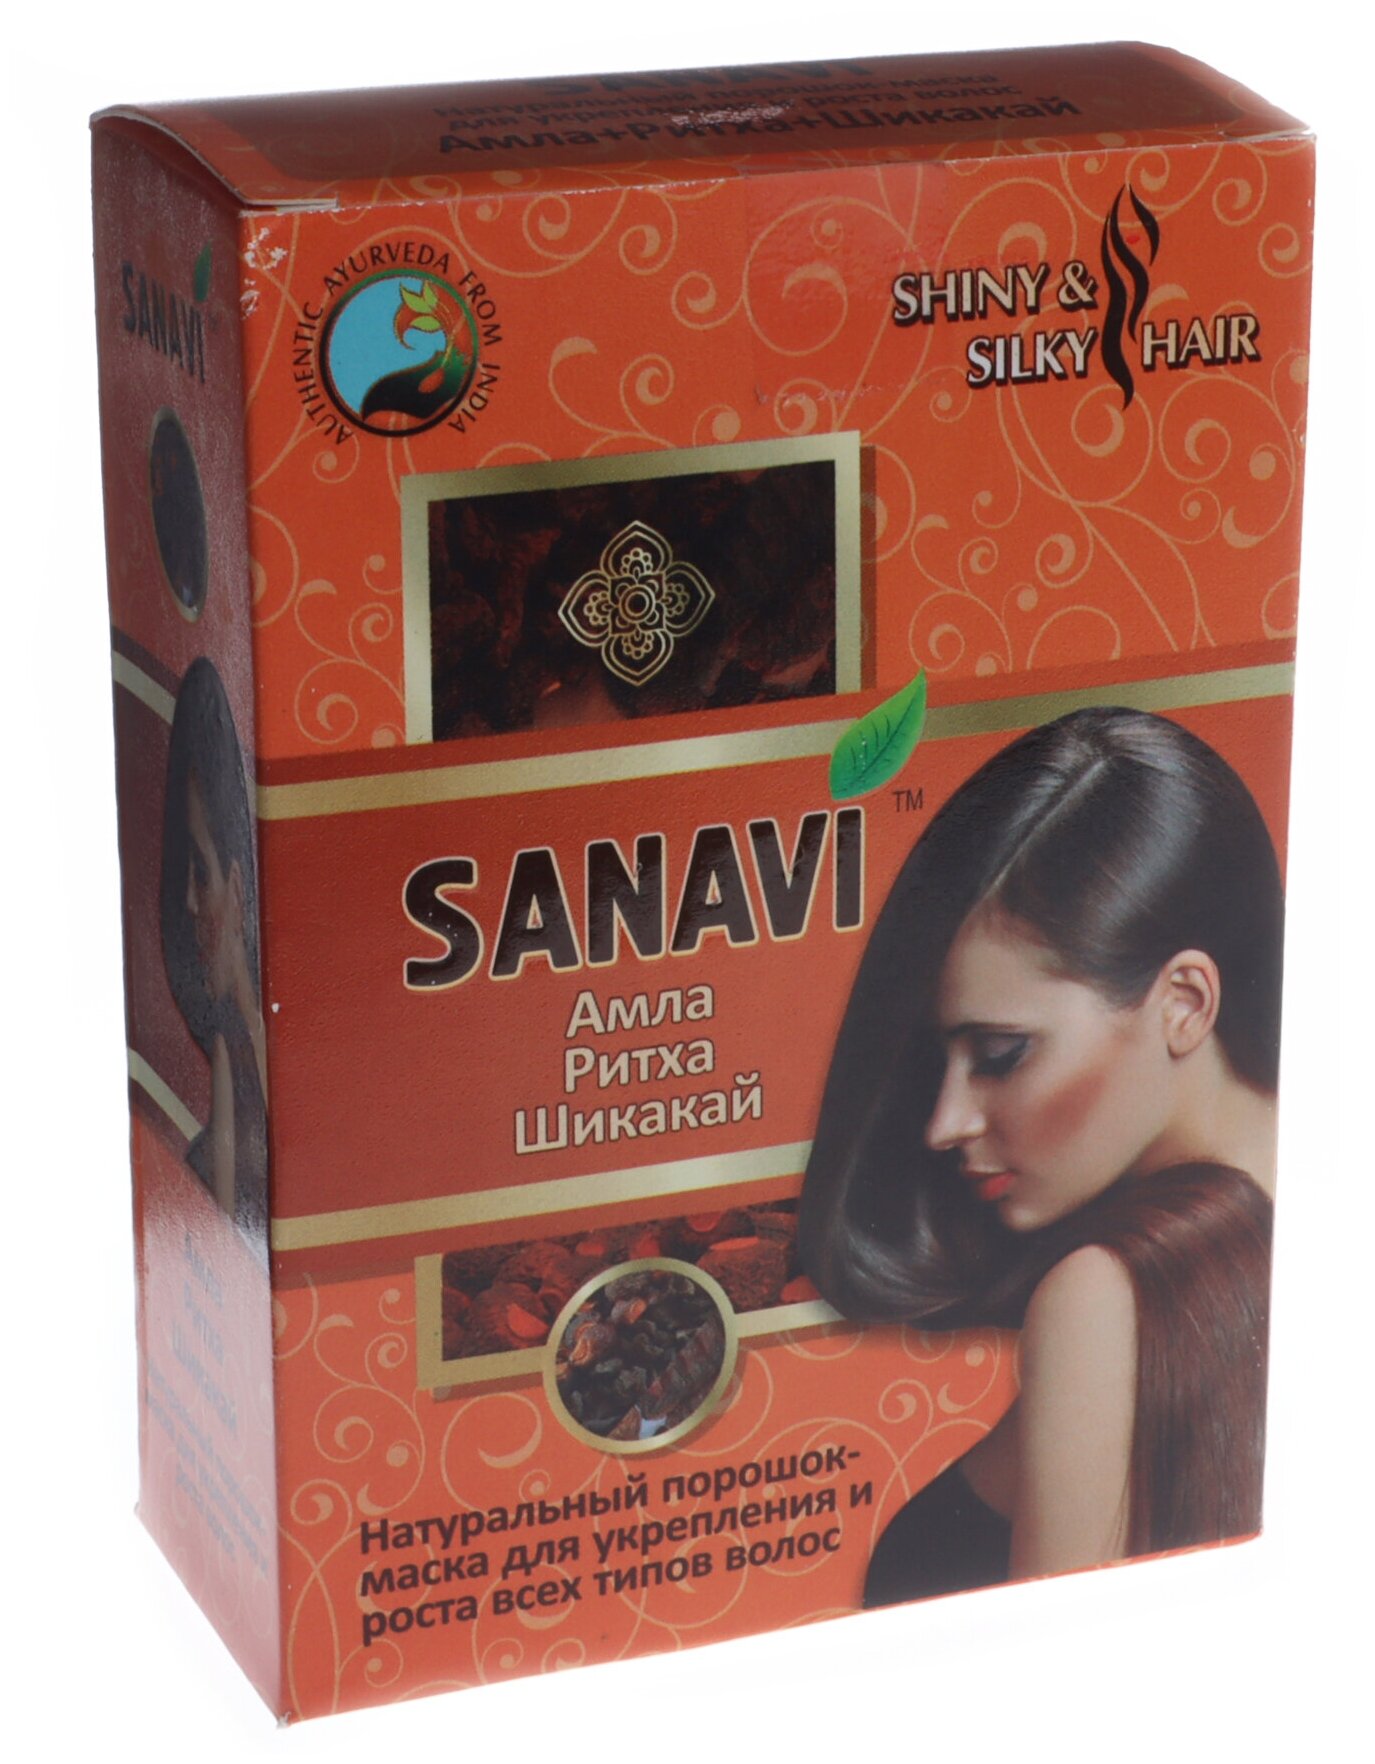 Натуральный порошок для волос "Амла+Ритха+Шикакай" "Sanavi" 100гр.